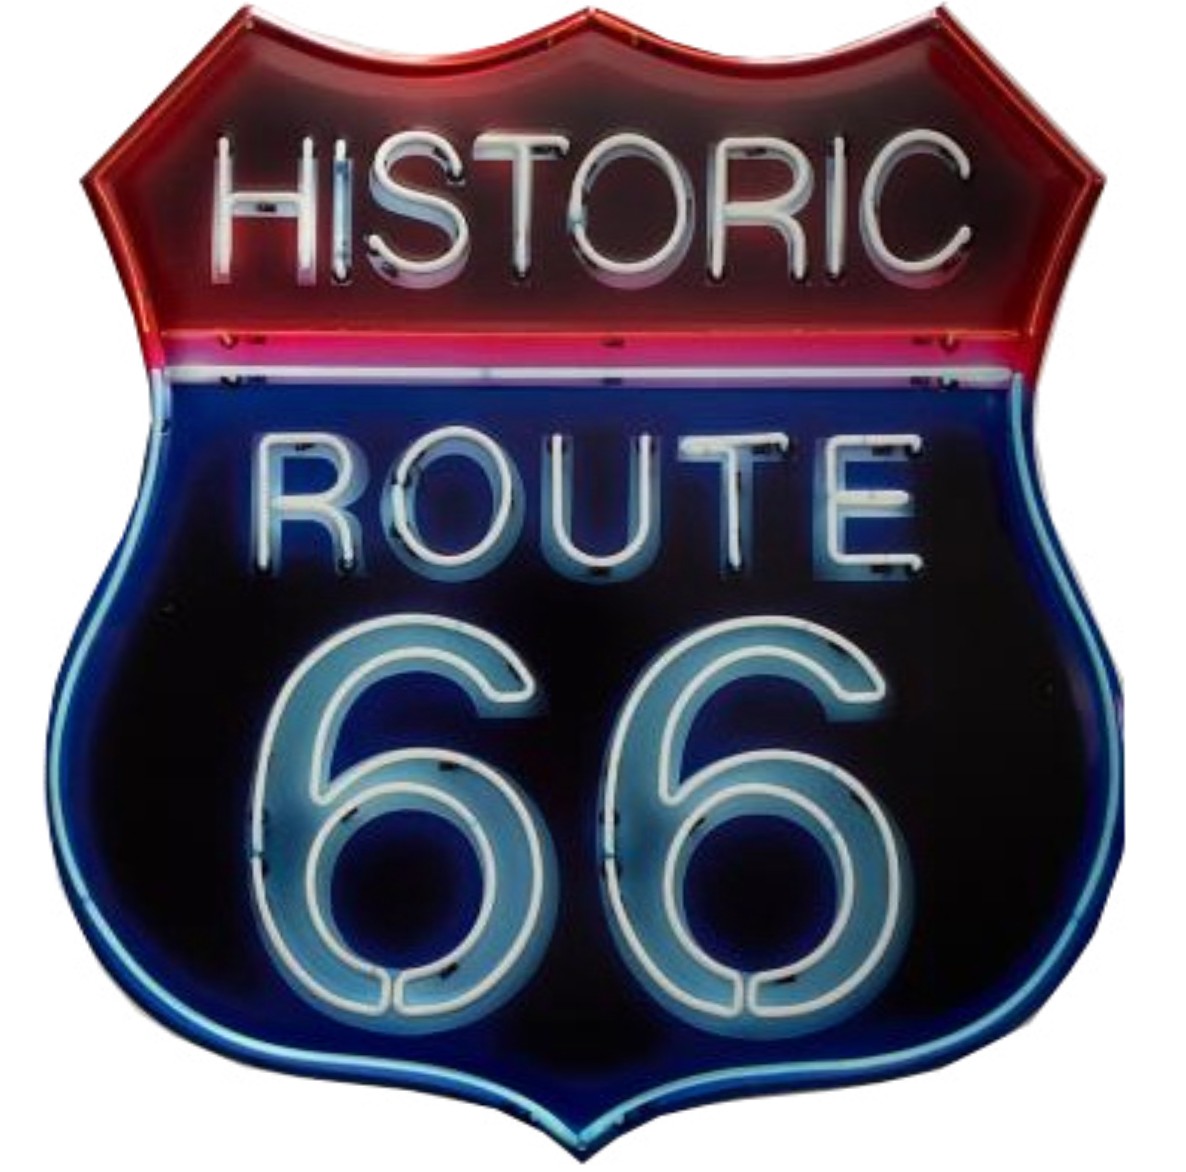 I&S-RXLD010-plaque-decoupé-laser-relief-métallique-americaine-mural-décoration-legend-historic-Route-66-legend-neon-fluo-vintage